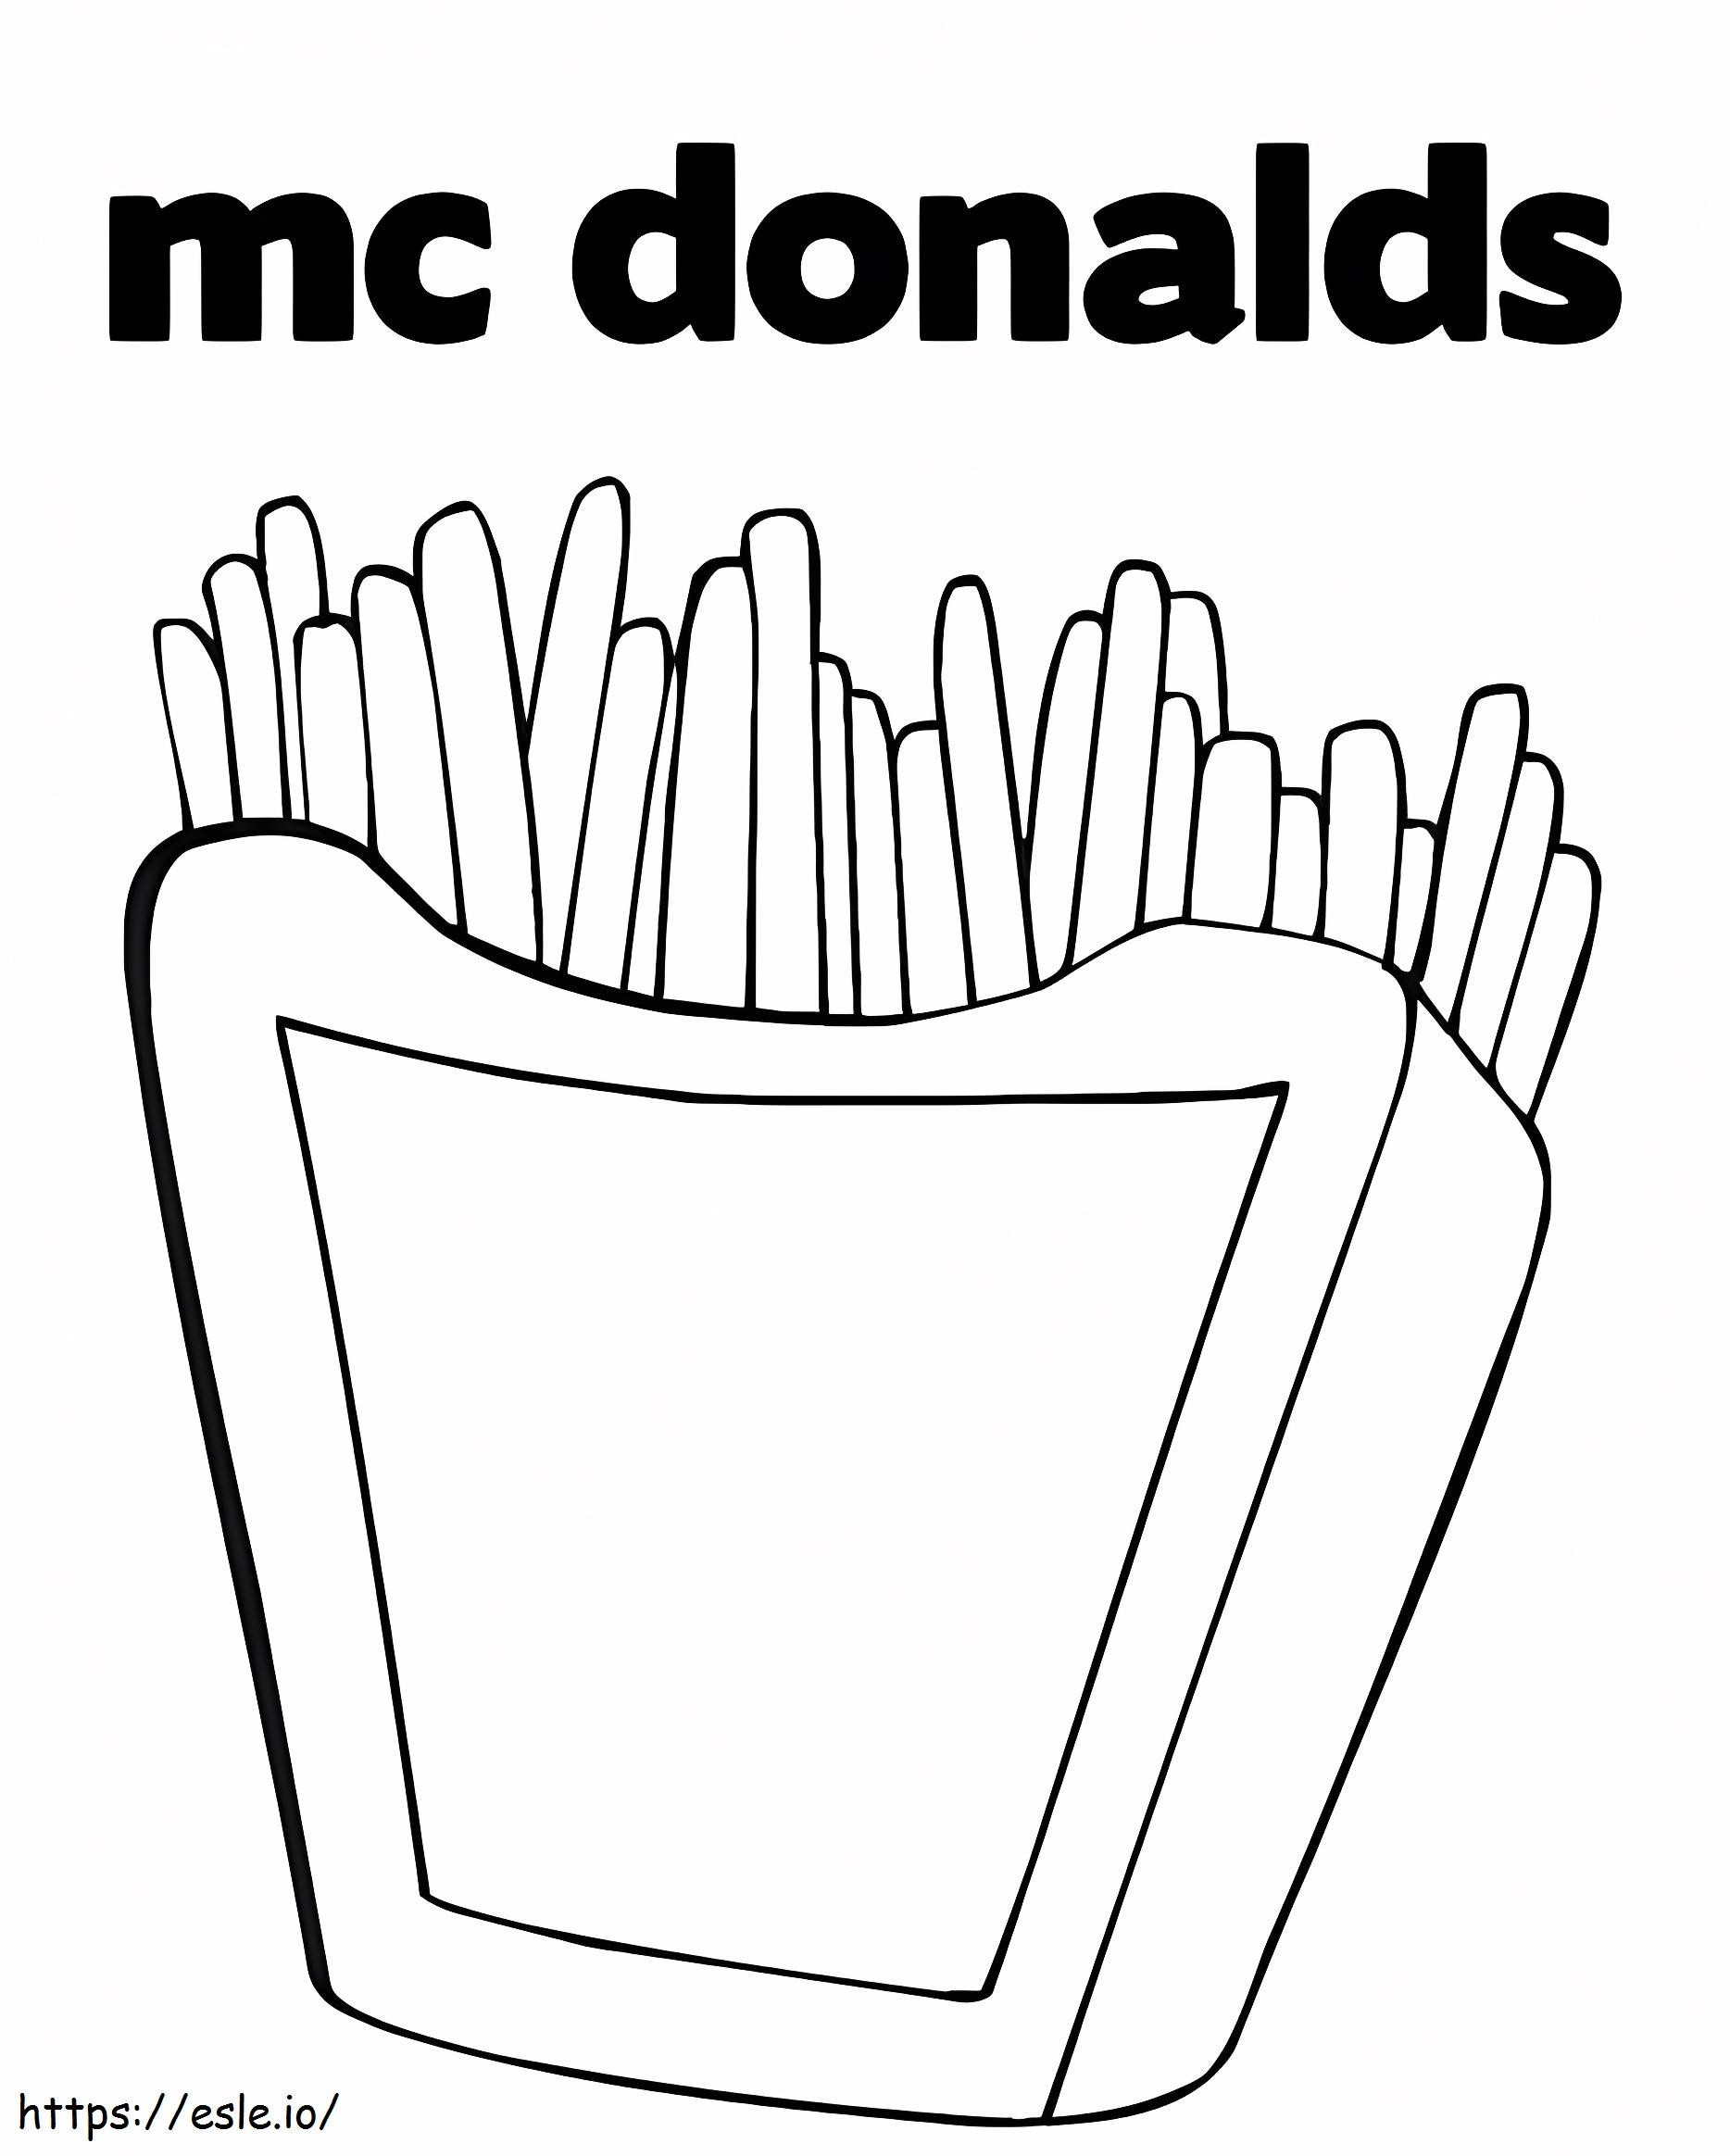 Patatine fritte di McDonald's da colorare da colorare